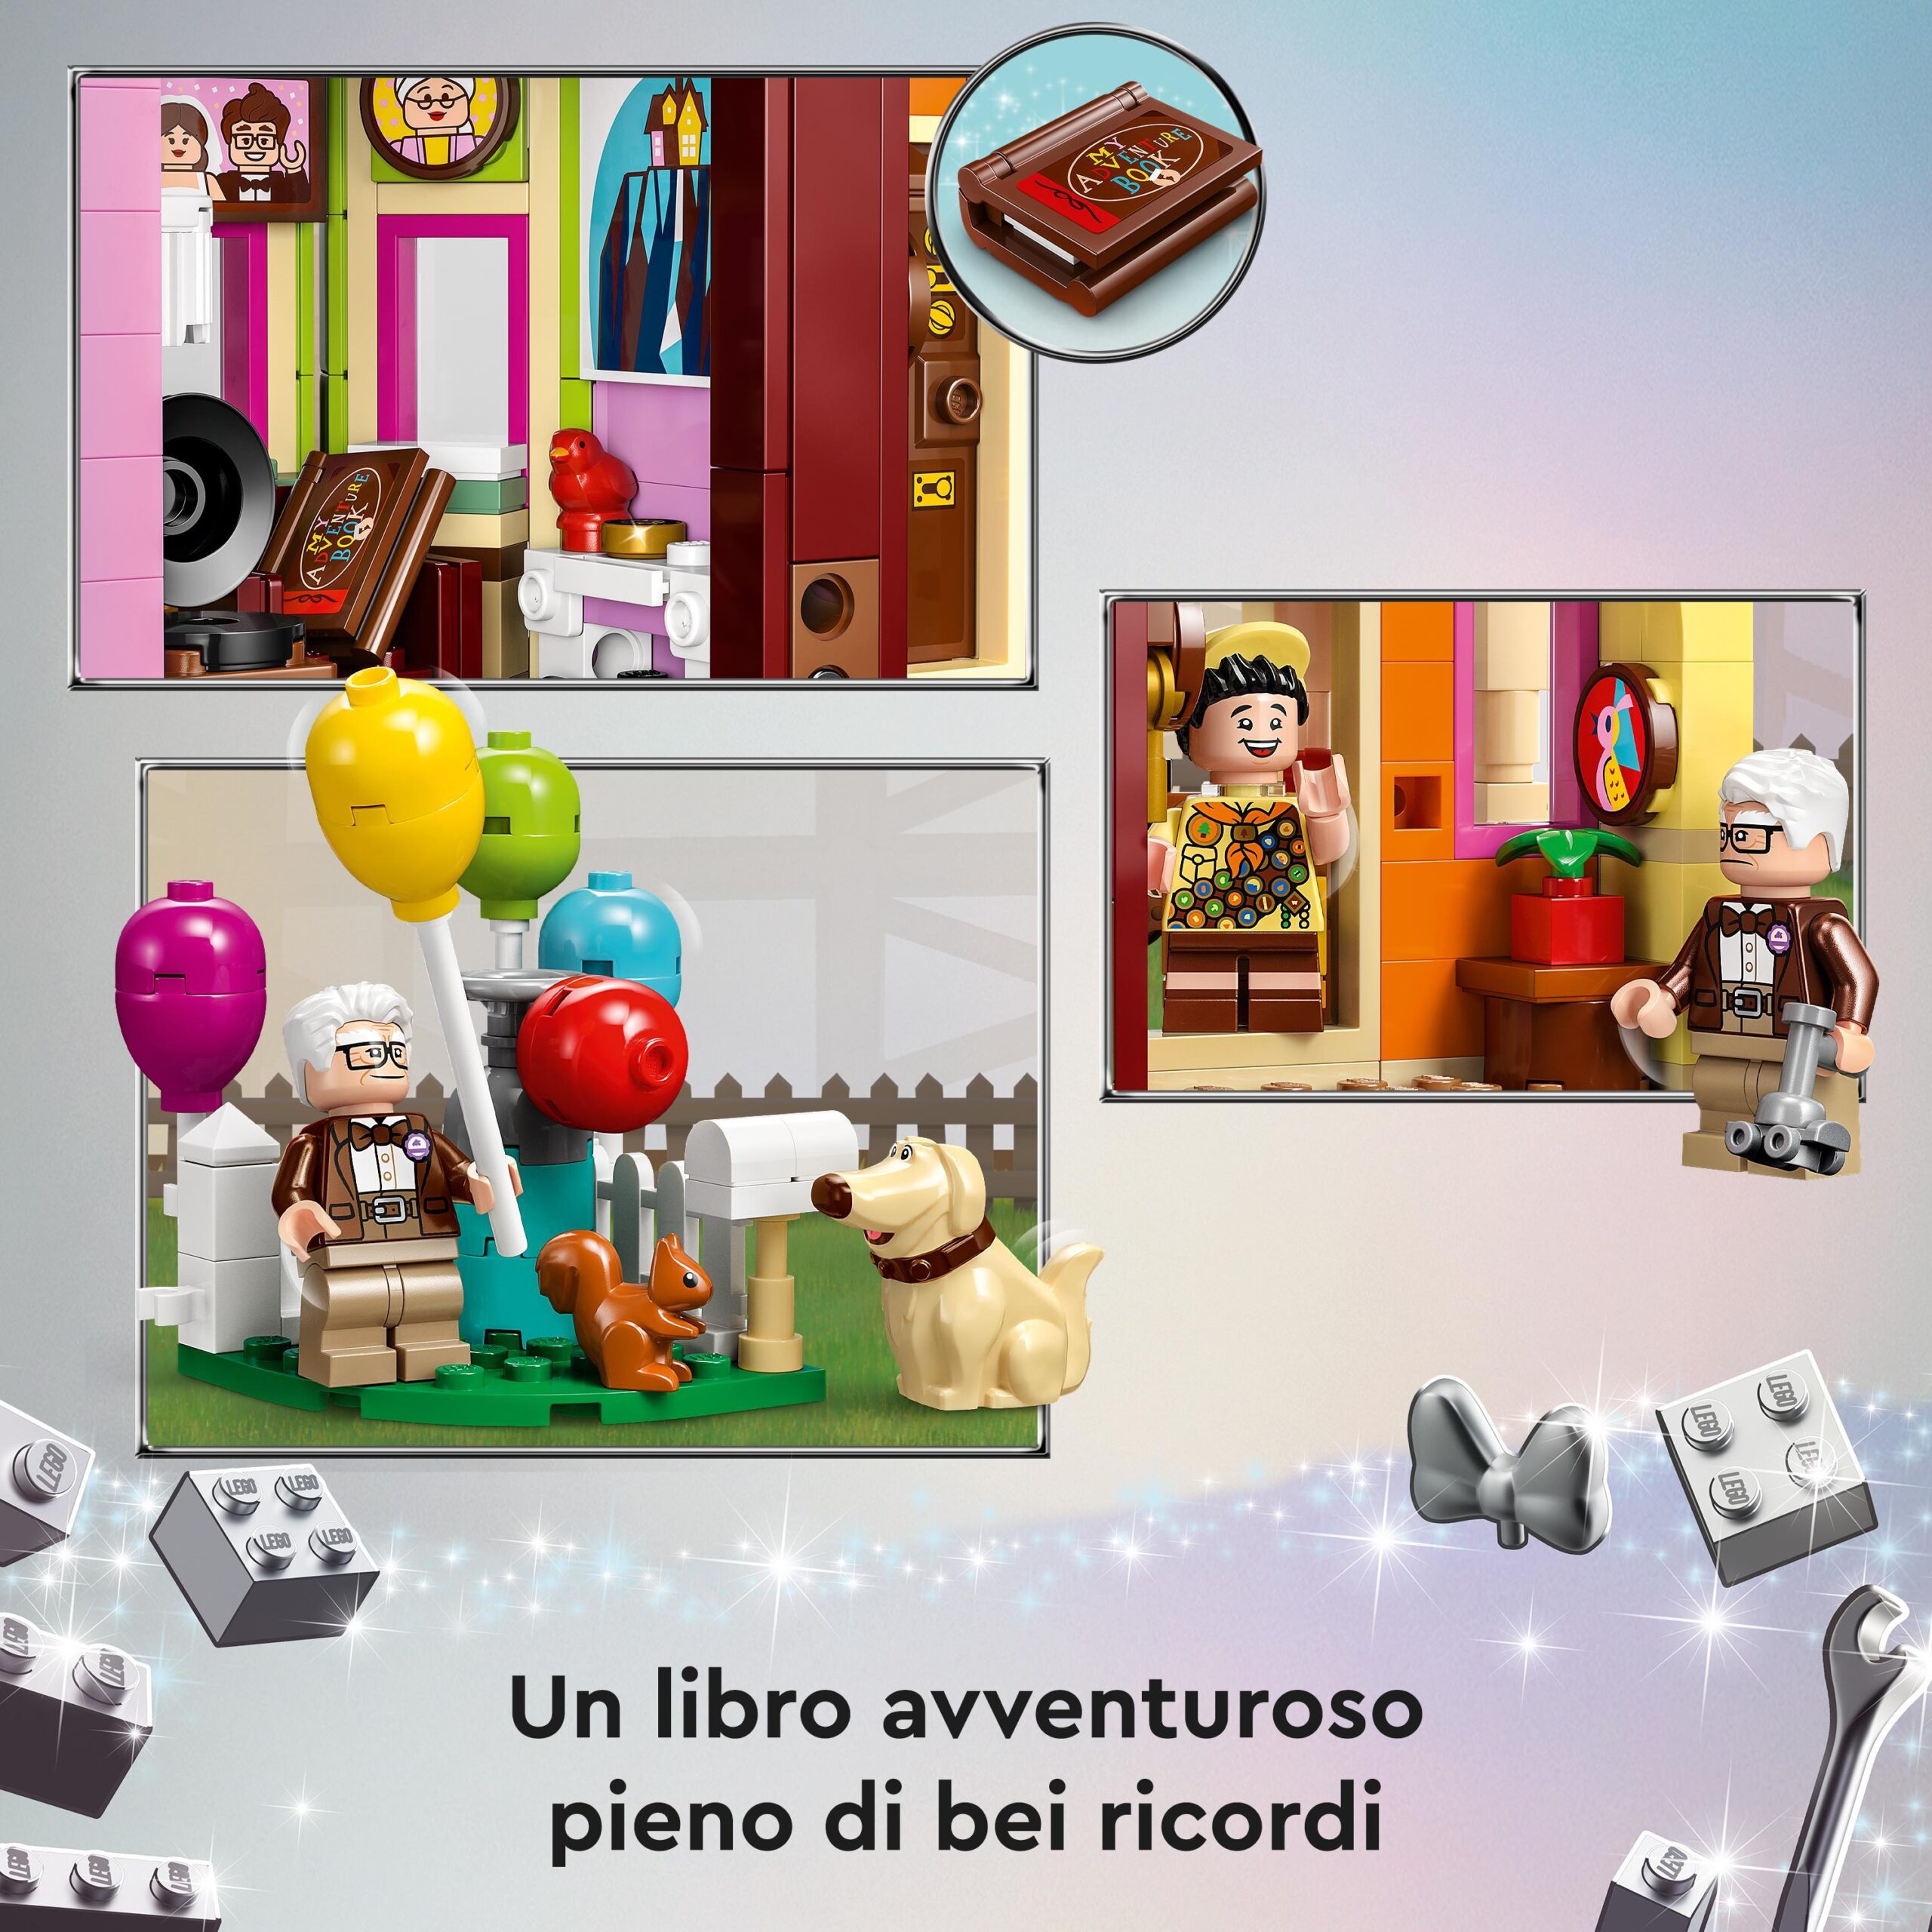 Lego disney e pixar 43217 casa di “up”, modellino con palloncini e